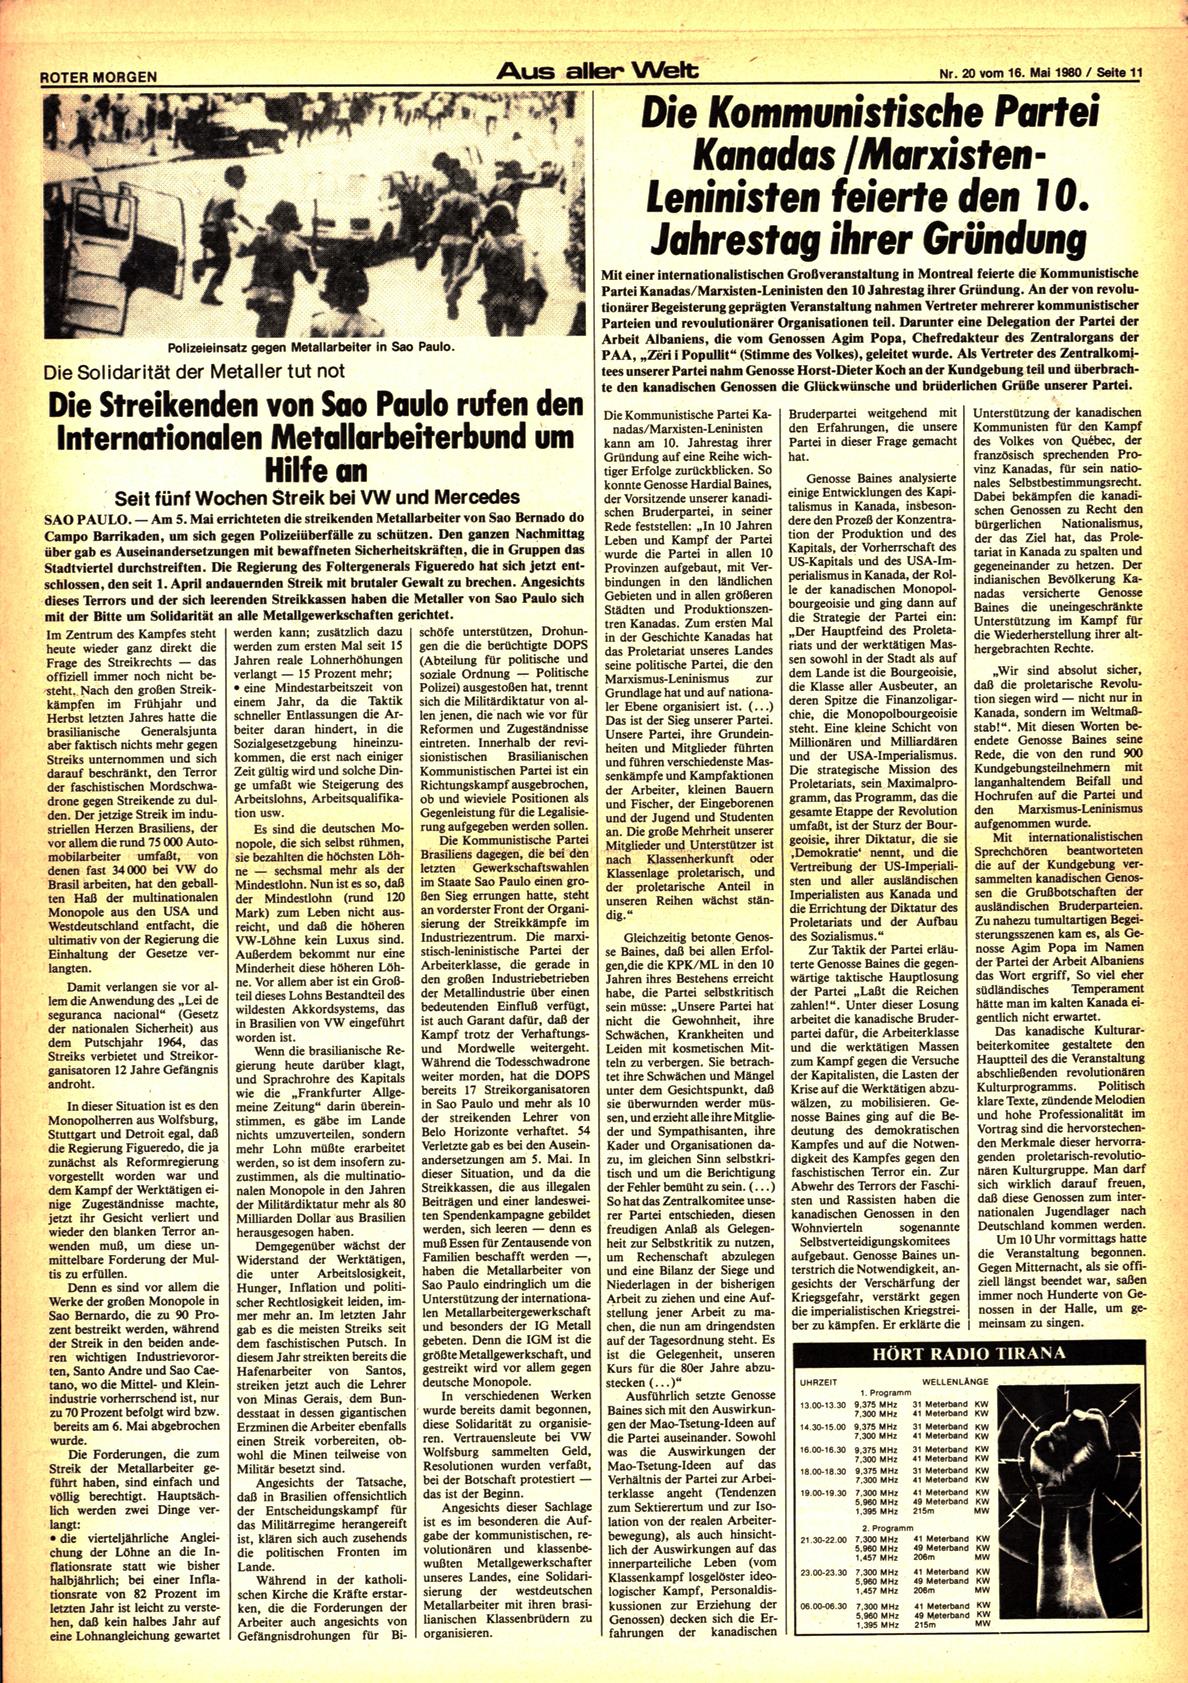 Roter Morgen, 14. Jg., 16. Mai 1980, Nr. 20, Seite 11